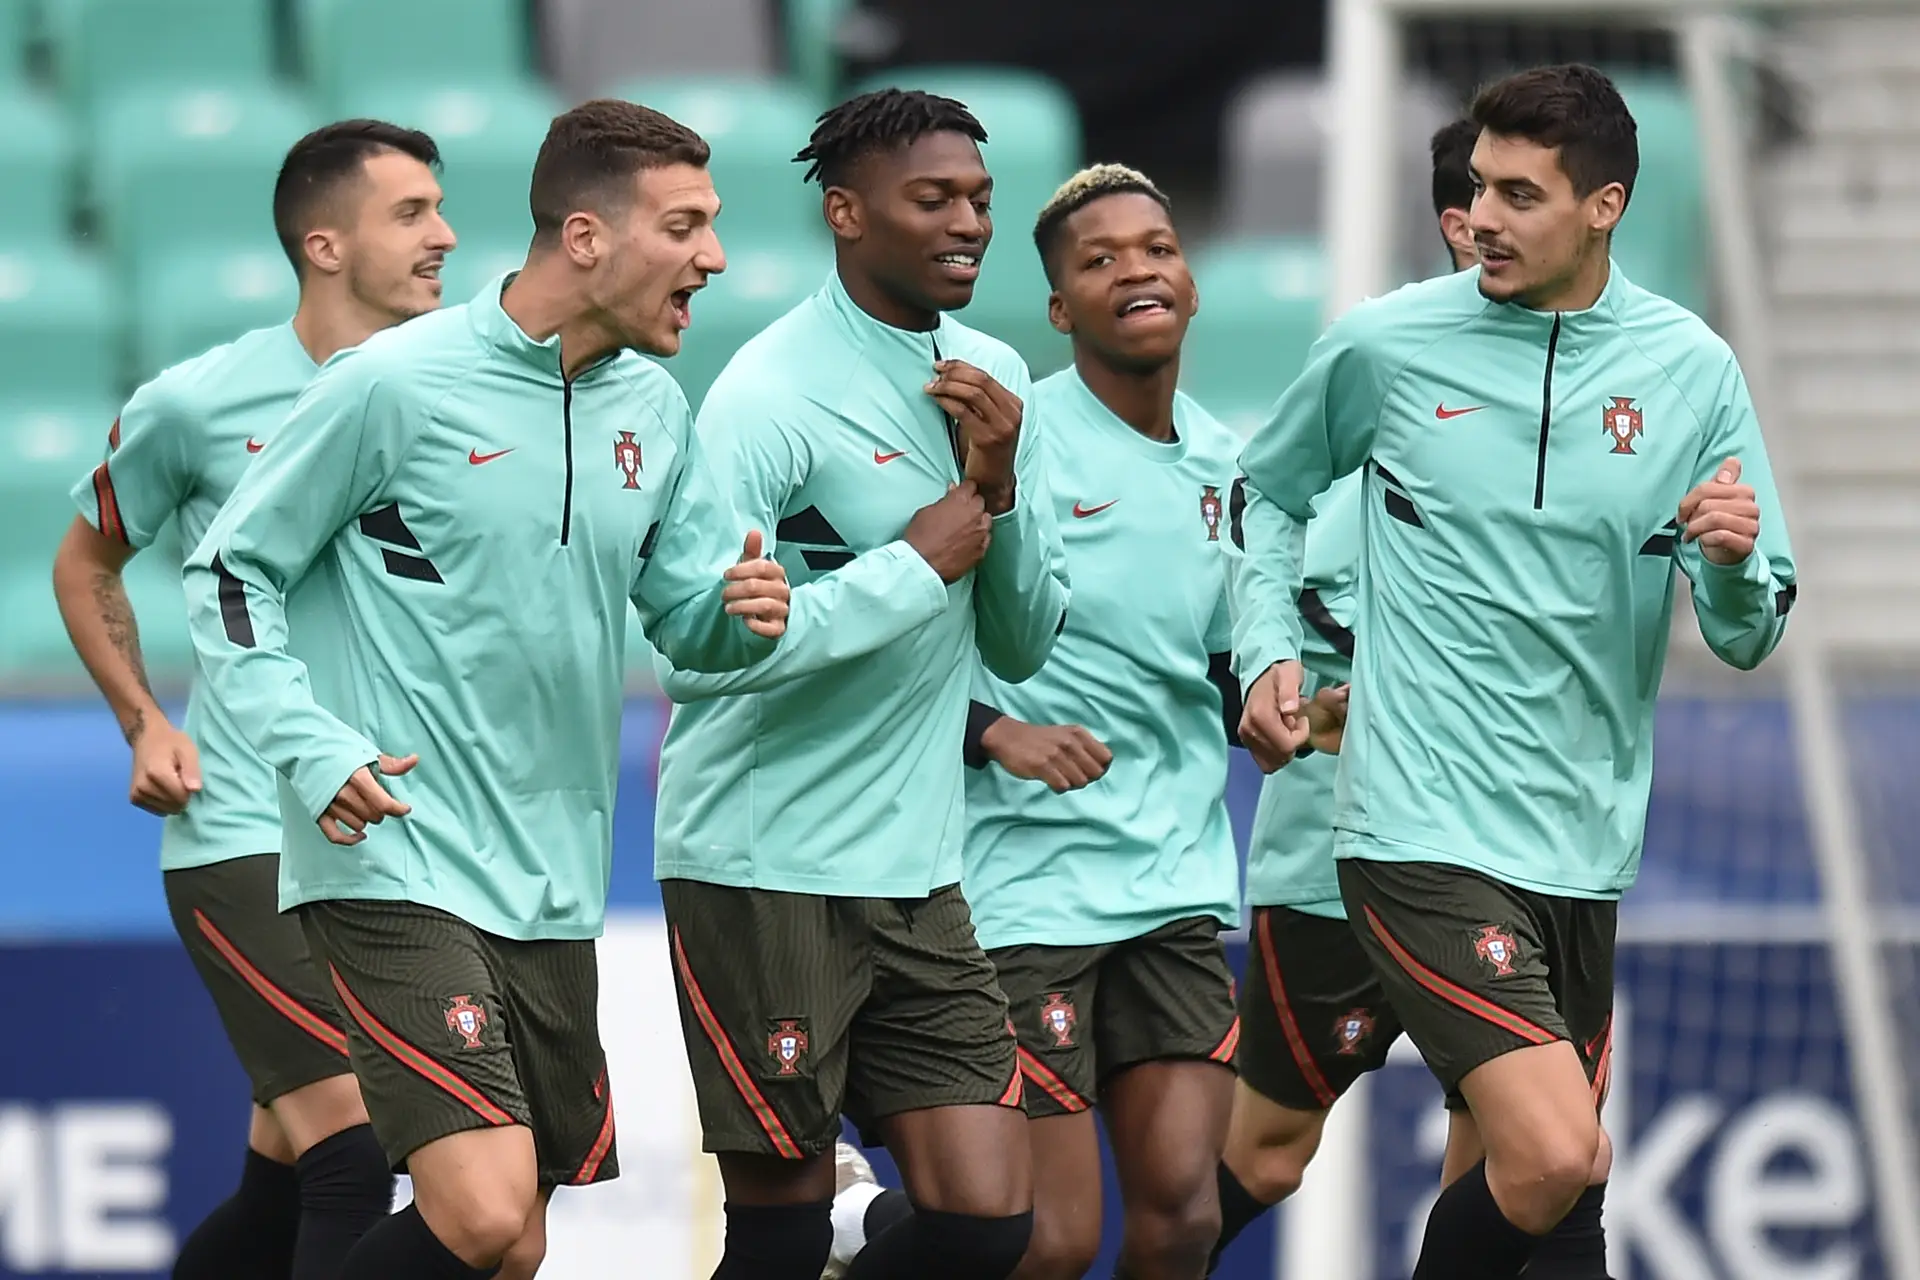 Europeu de sub-19: Portugal goleia Itália e fica perto das meias-finais -  SIC Notícias